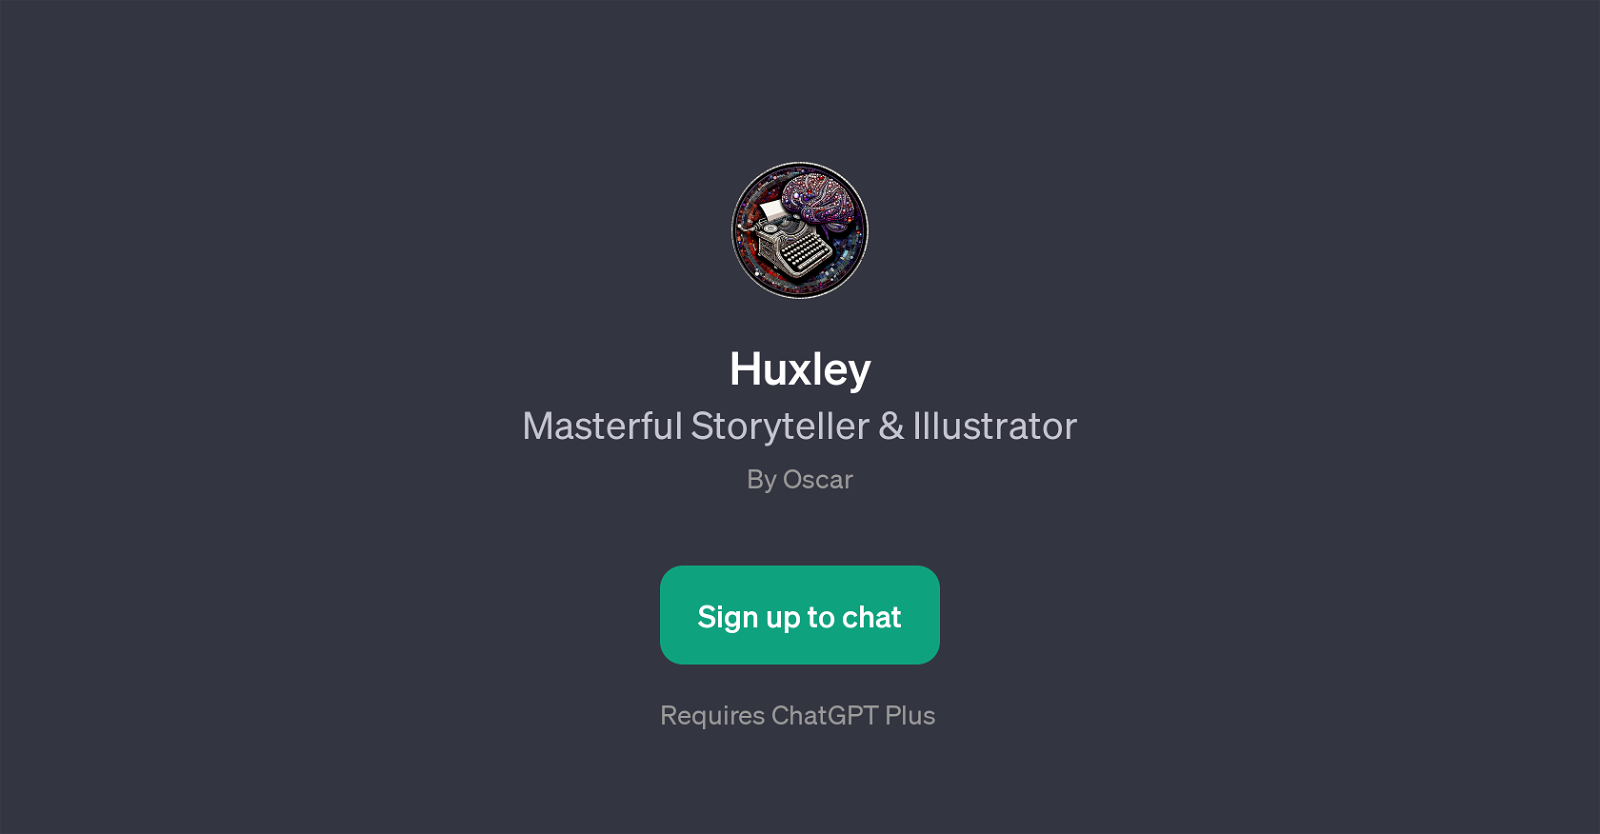 Huxley website